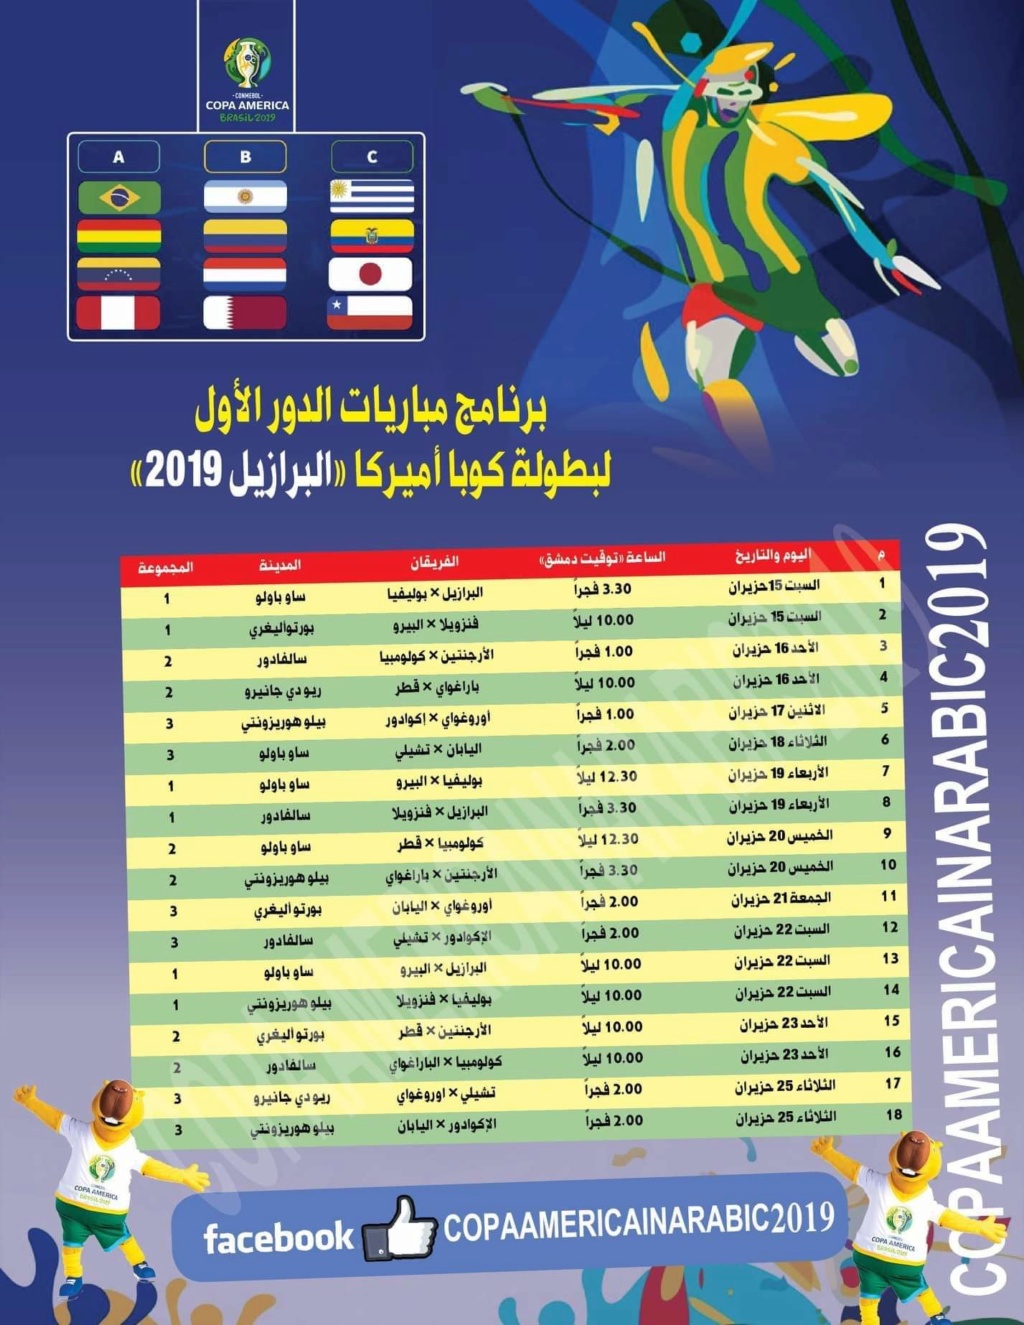 جدول مباريات كوبا امريكا 2019 البرازيل لكرم القدم Fb_im244